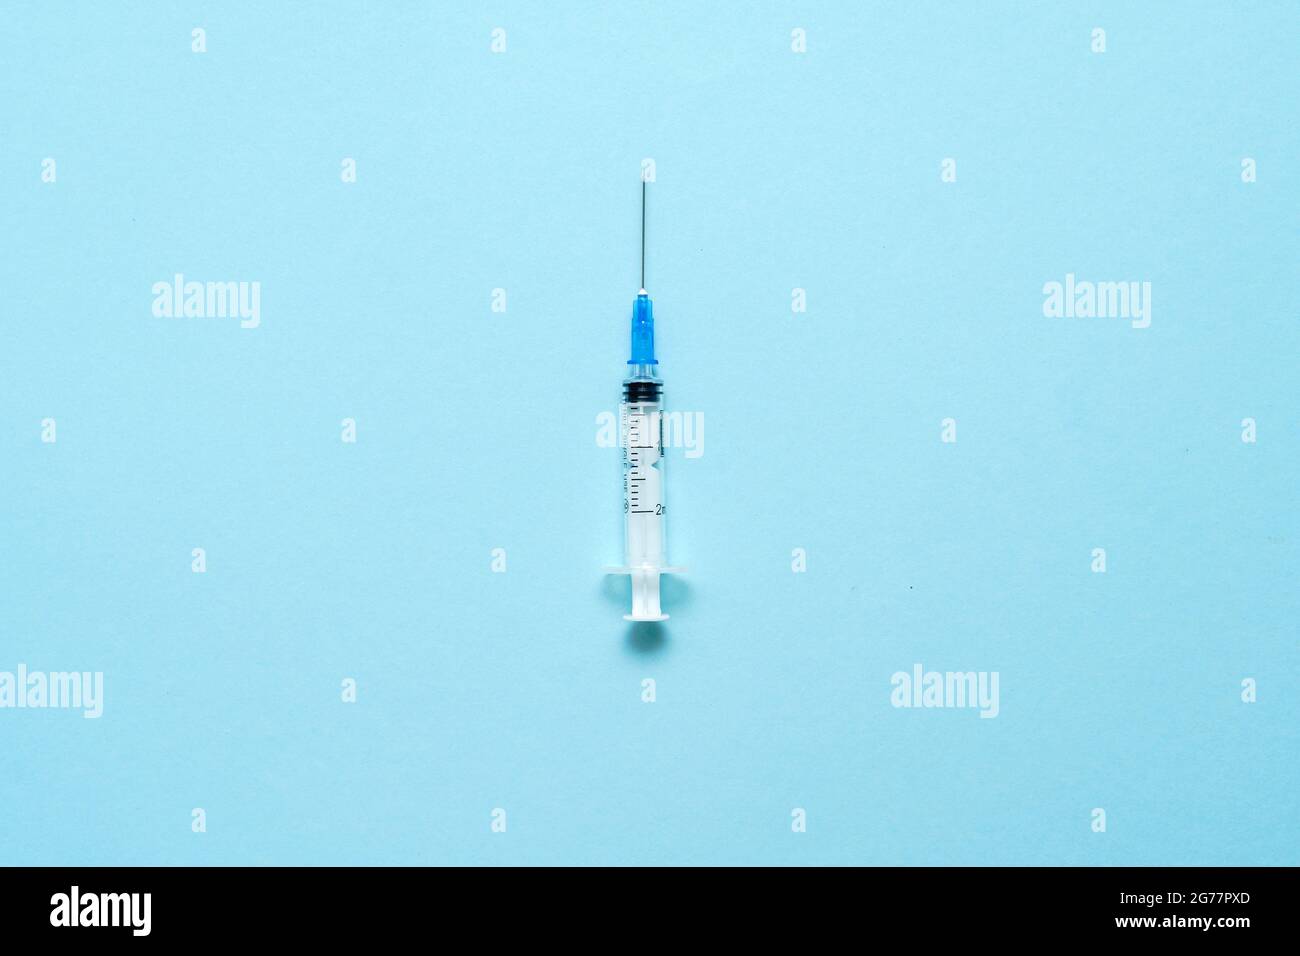 Vista dall'alto della siringa per iniezione su sfondo blu. Concetto minimo di vaccino. Trattamento medico del diabete con insulina. Vaccinazione di Covid-19. Antivax Foto Stock